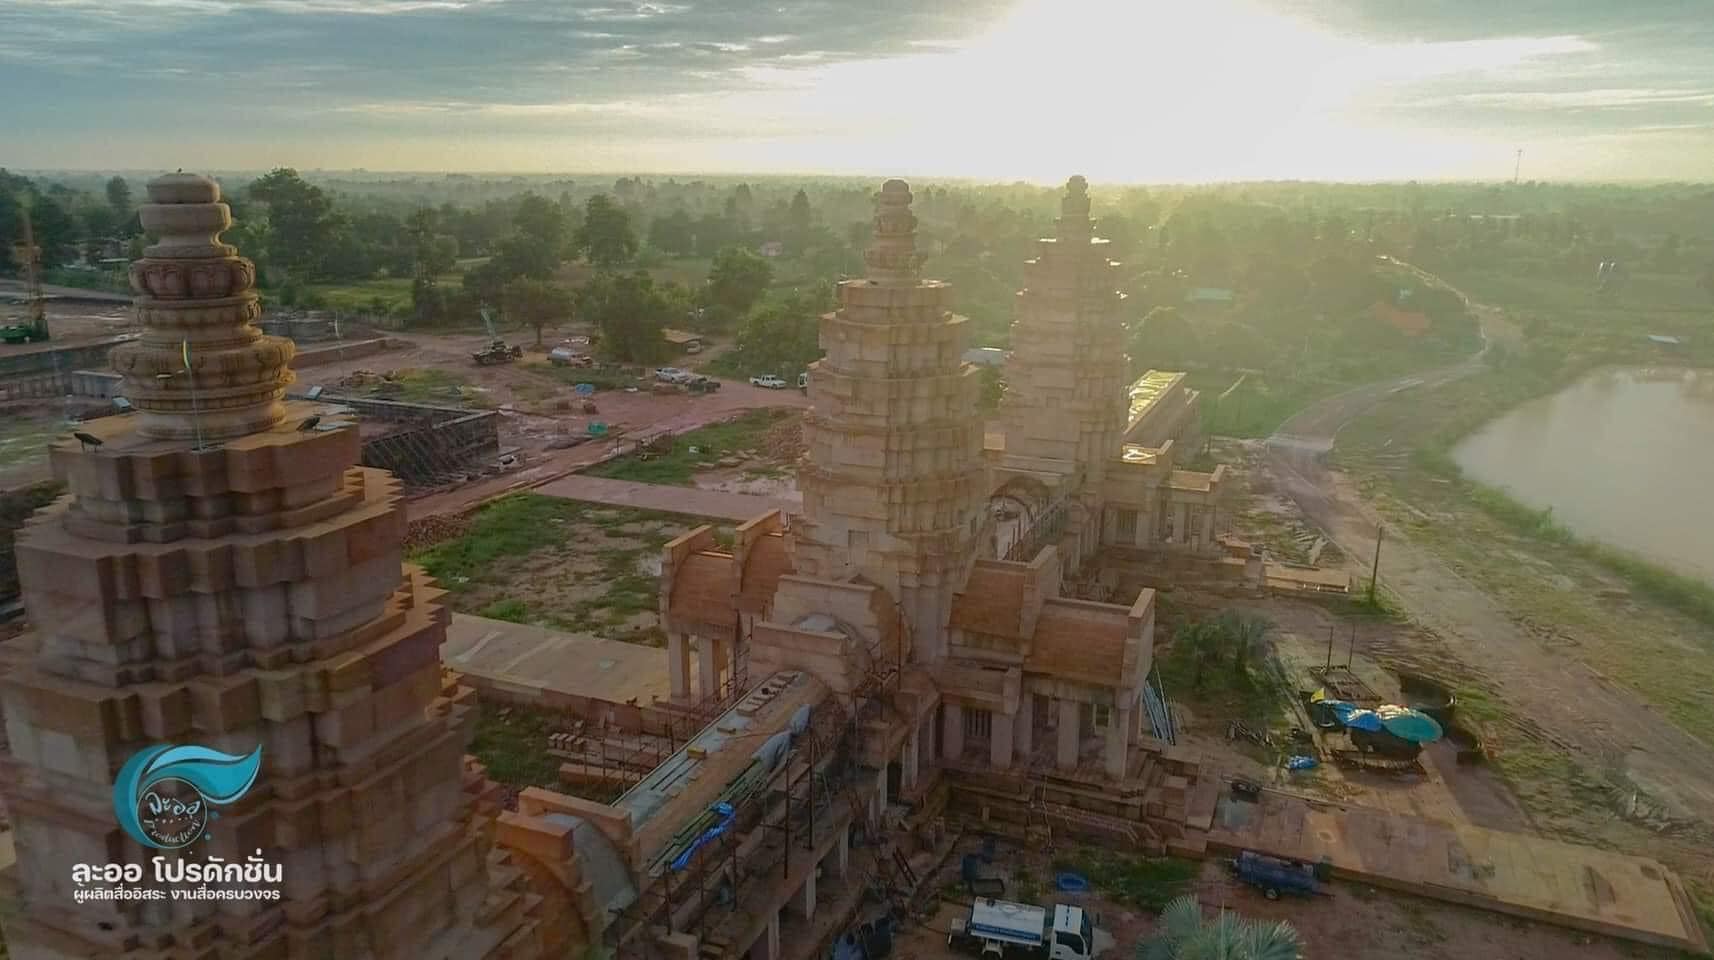 'Bản sao' Angkor Wat đang xây dựng ở Thái Lan bị Campuchia chỉ trích - Ảnh 3.